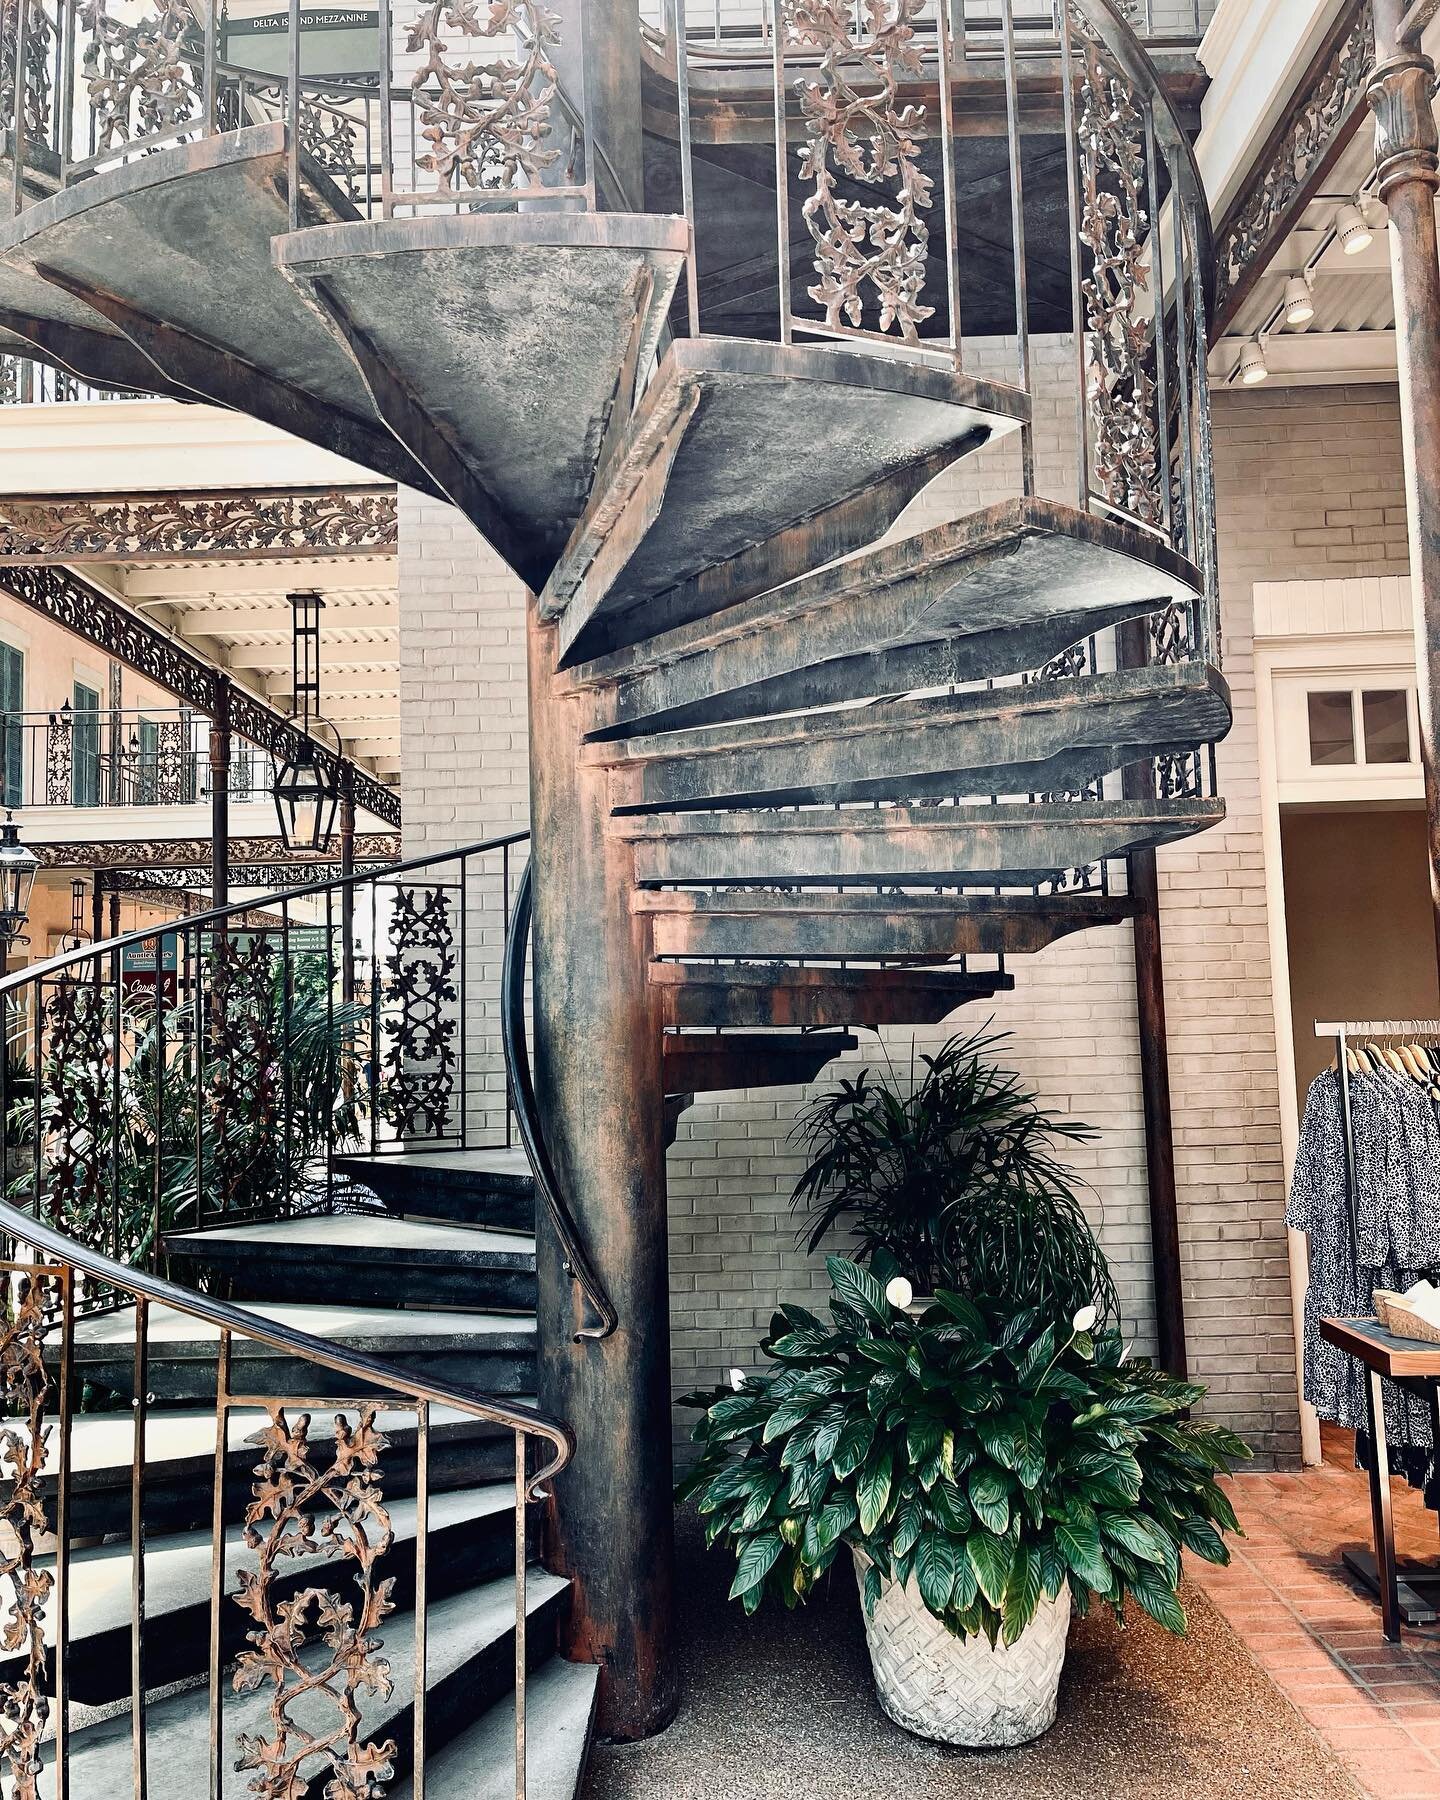 Love a good staircase. 

.
.
.
.
.
#spiralstaircase #rusticstaircase #elaboratestairs #devilisinthedetails #botanicalgardennashville #nasvhilletravel #downtownnashville #nashvillearchitecture #travelblog #gaylordopry #opryhotel